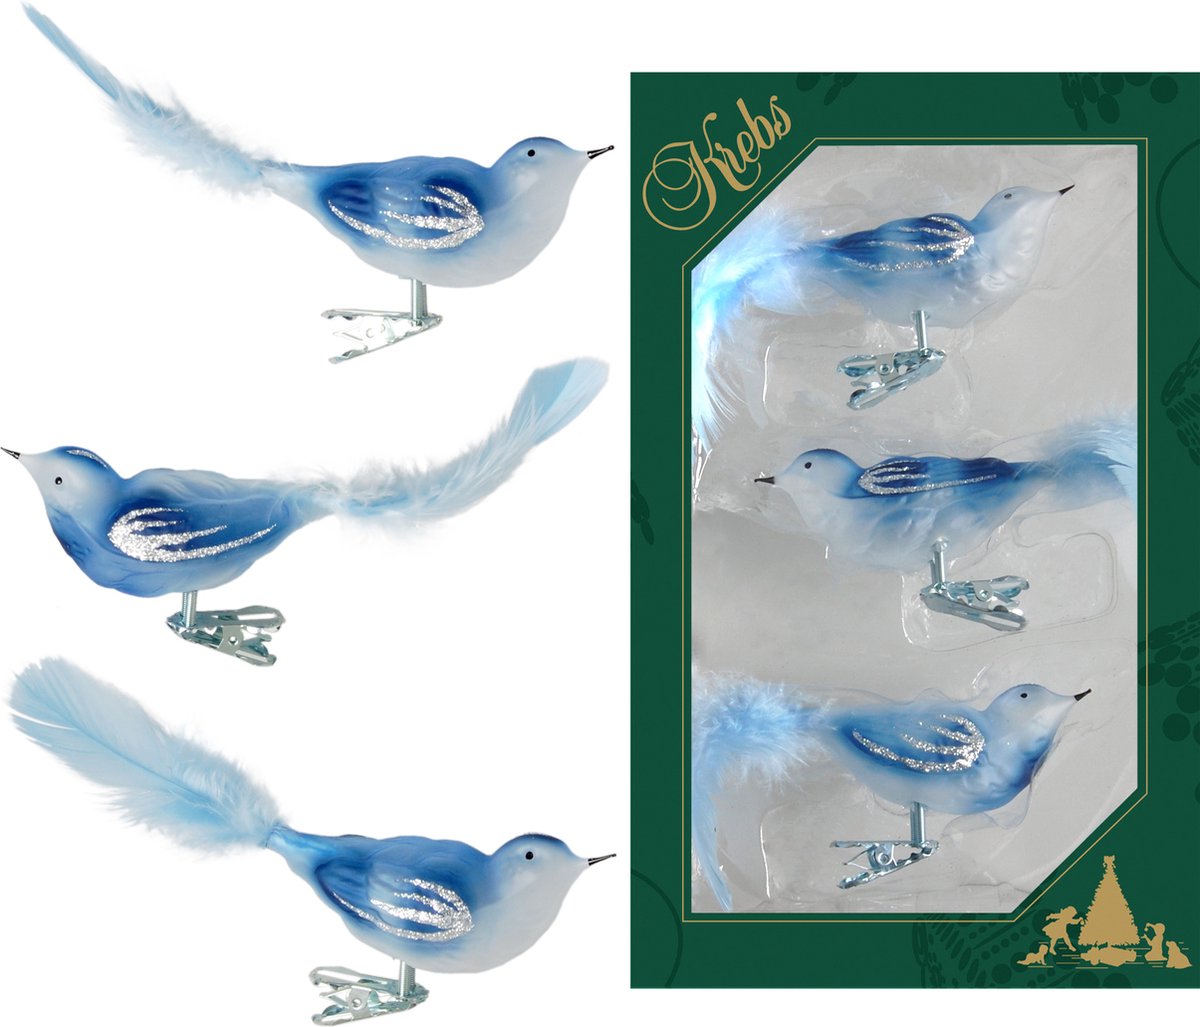 6x stuks luxe glazen decoratie vogels op clip blauw 11 cm - Decoratievogeltjes - Kerstboomversiering